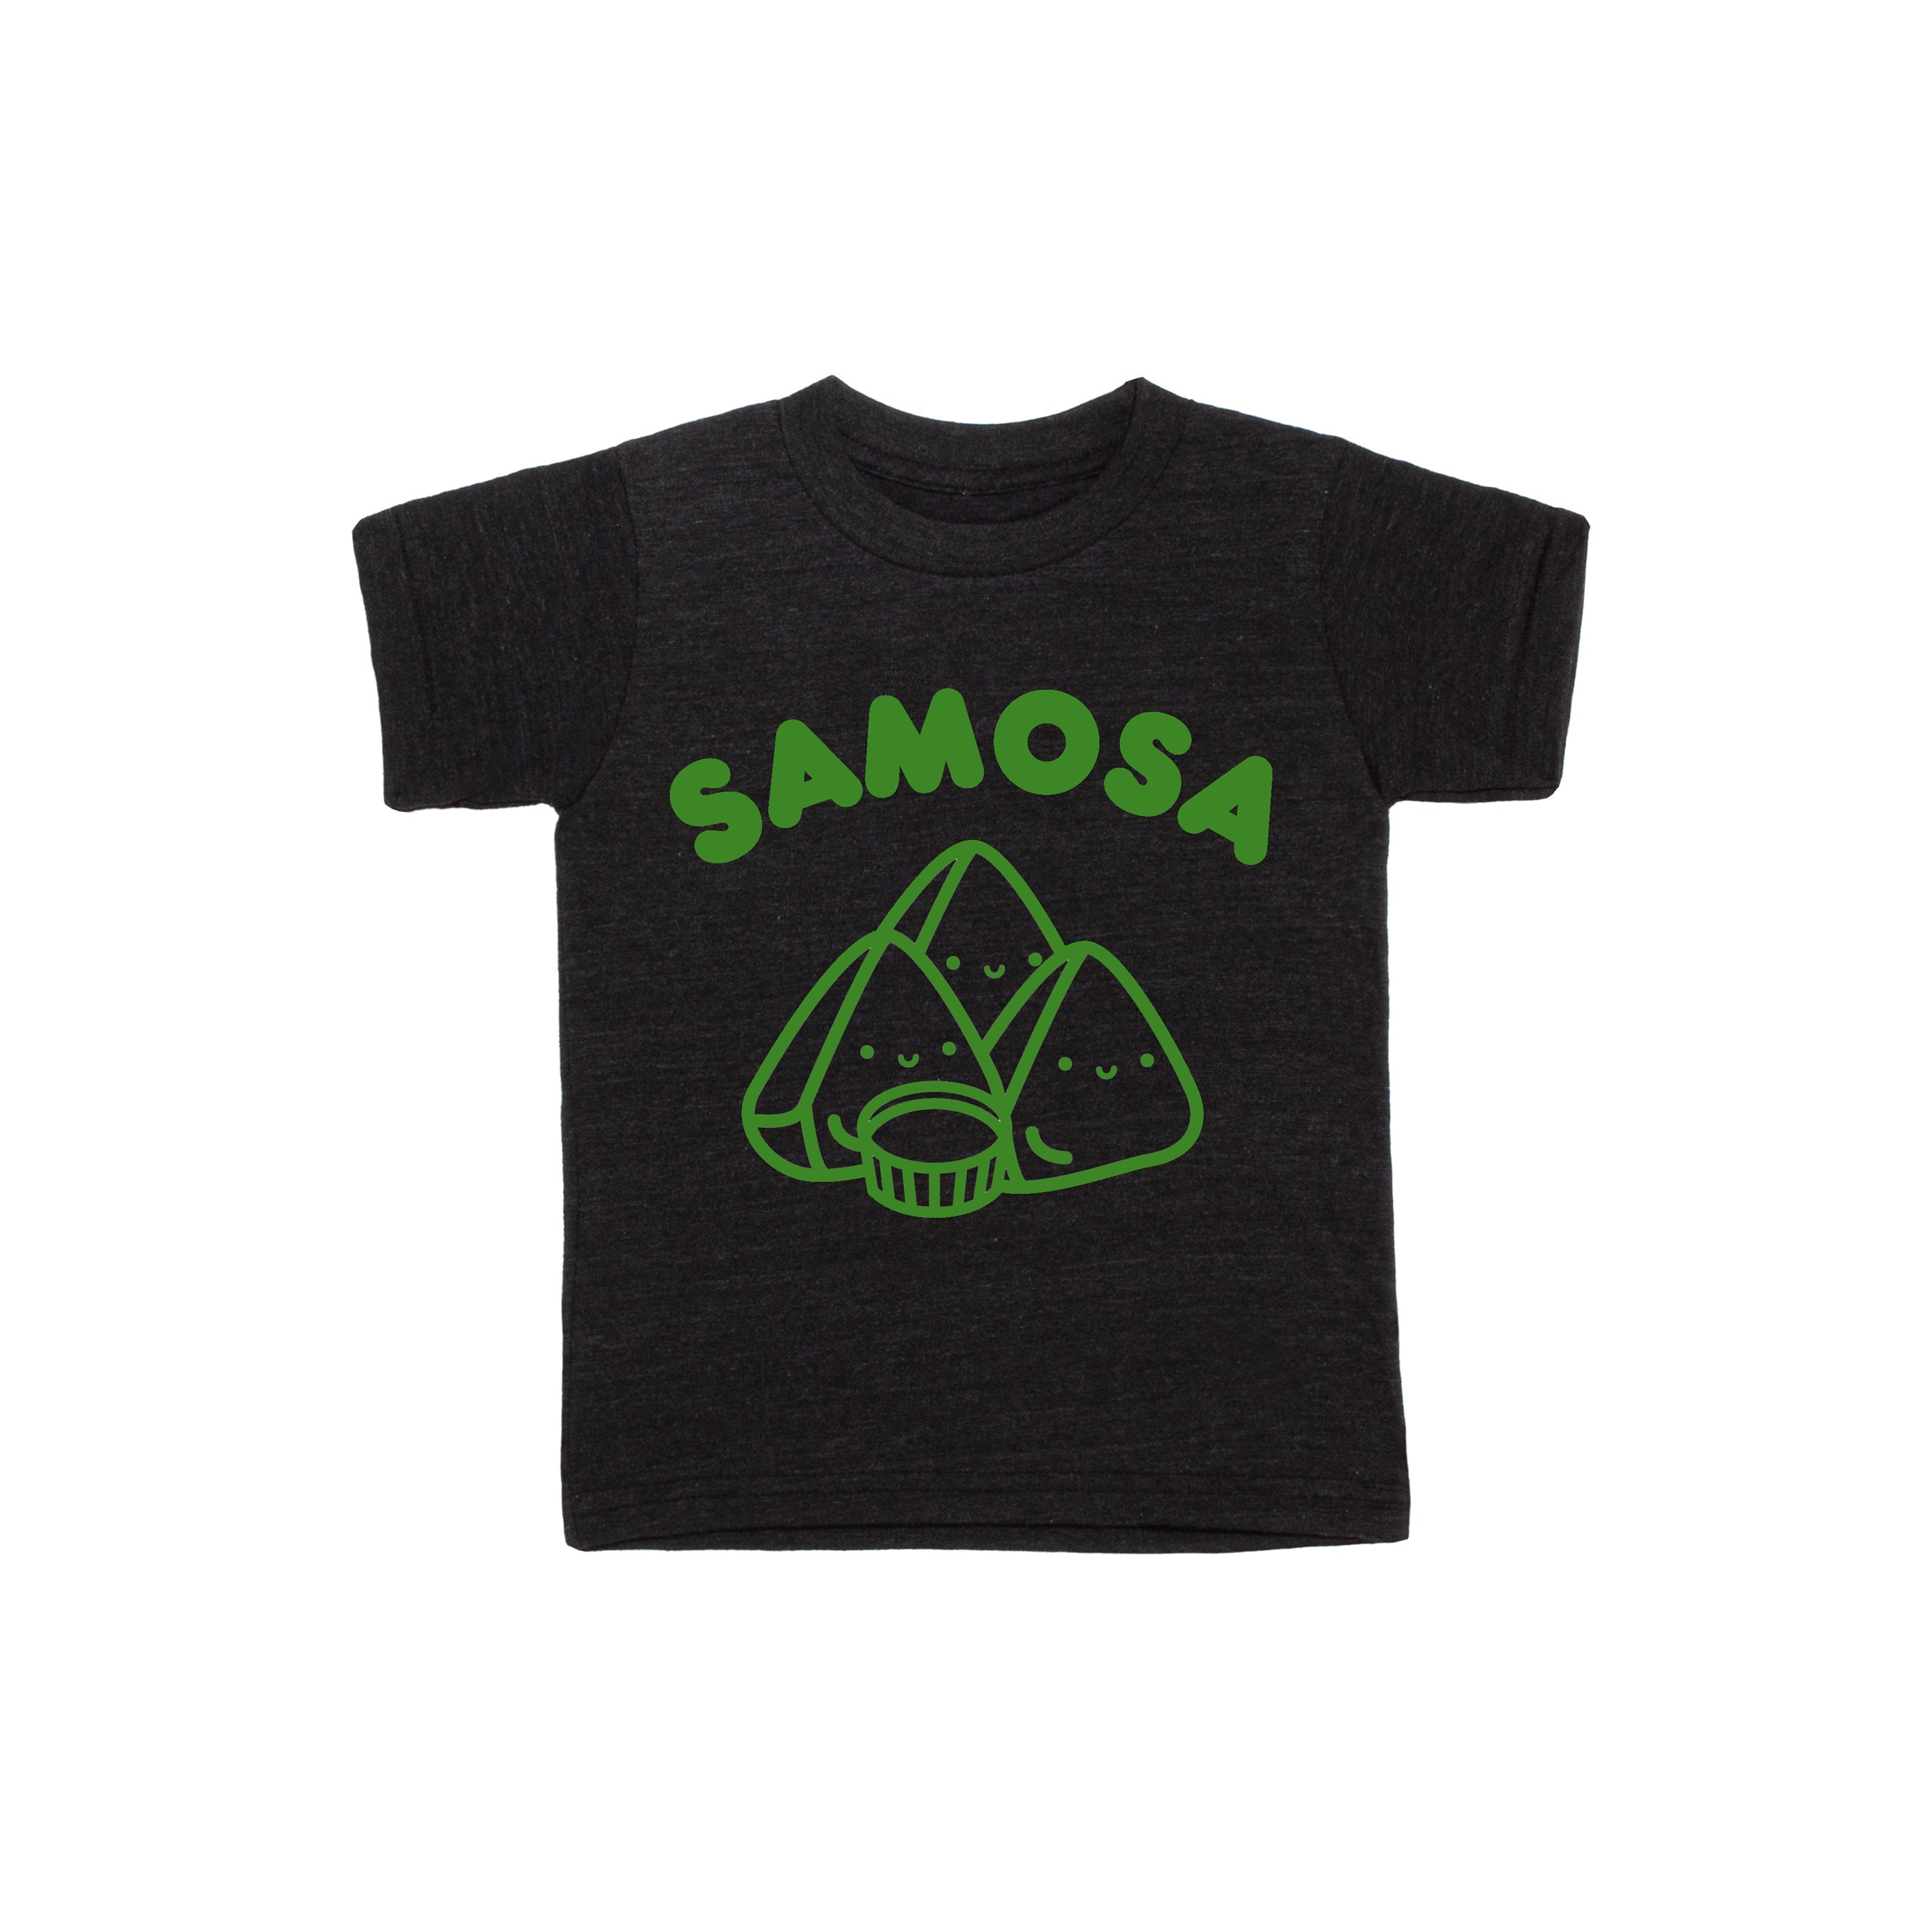 SALE Samosa Baby + Kid + Adult Tee